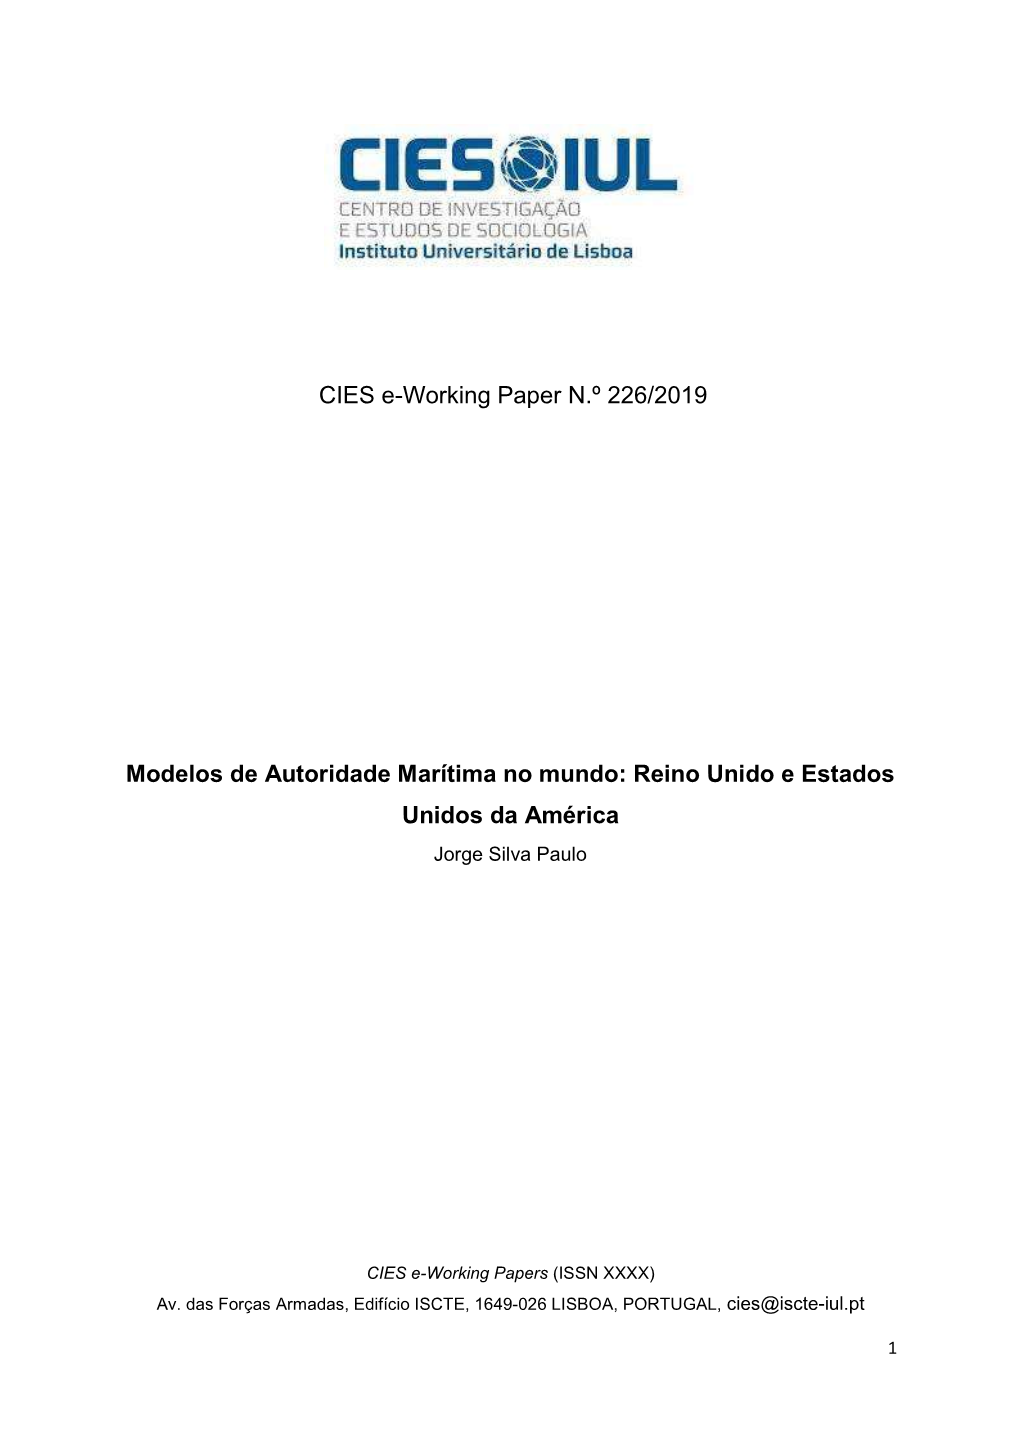 CIES E-Working Paper N.º 226/2019 Modelos De Autoridade Marítima No Mundo: Reino Unido E Estados Unidos Da América